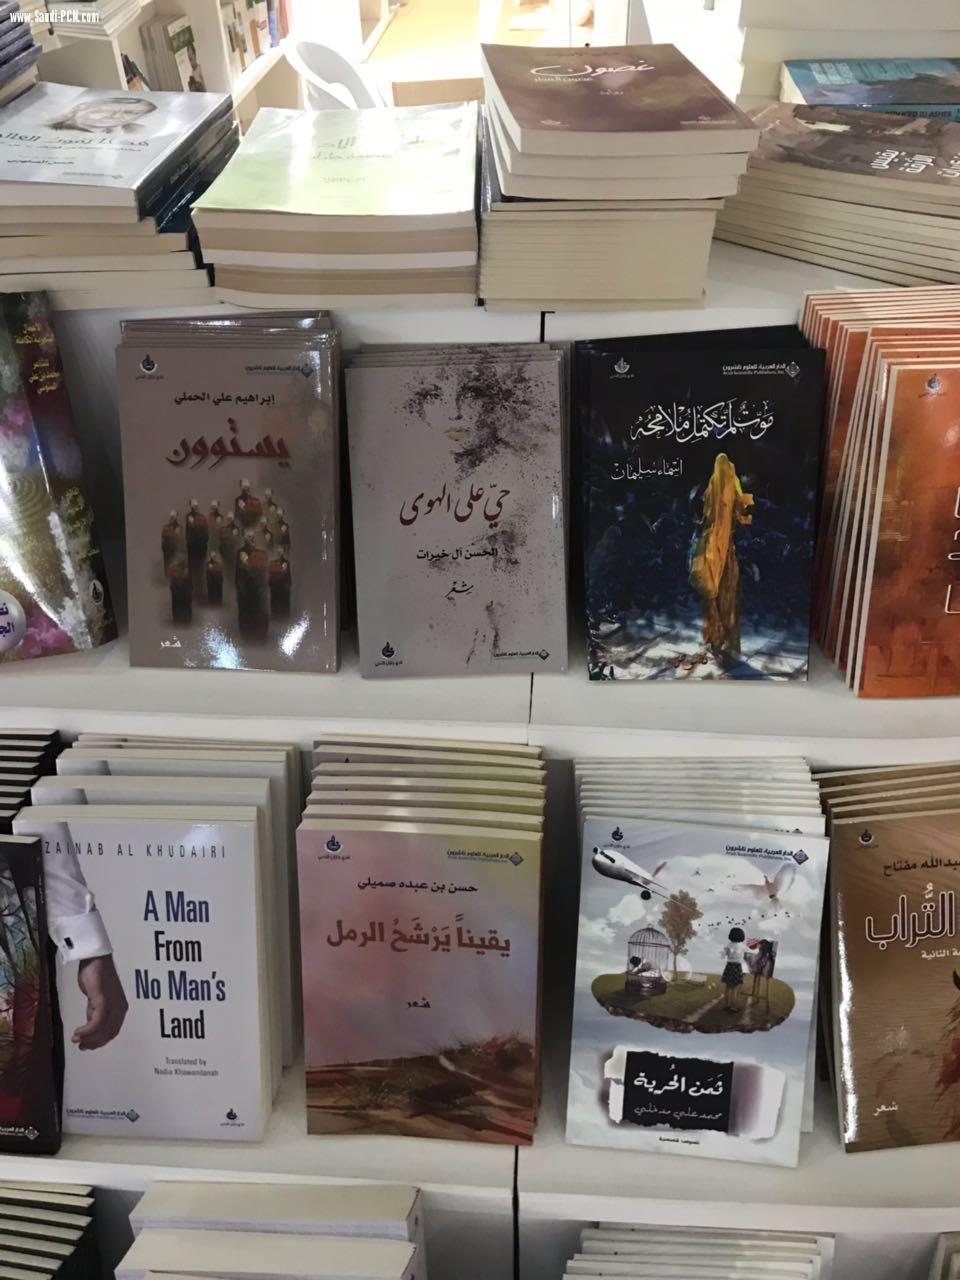 81عنوانا يشارك بها أدبي جازان في معرض الرياض الدولي للكتاب2018